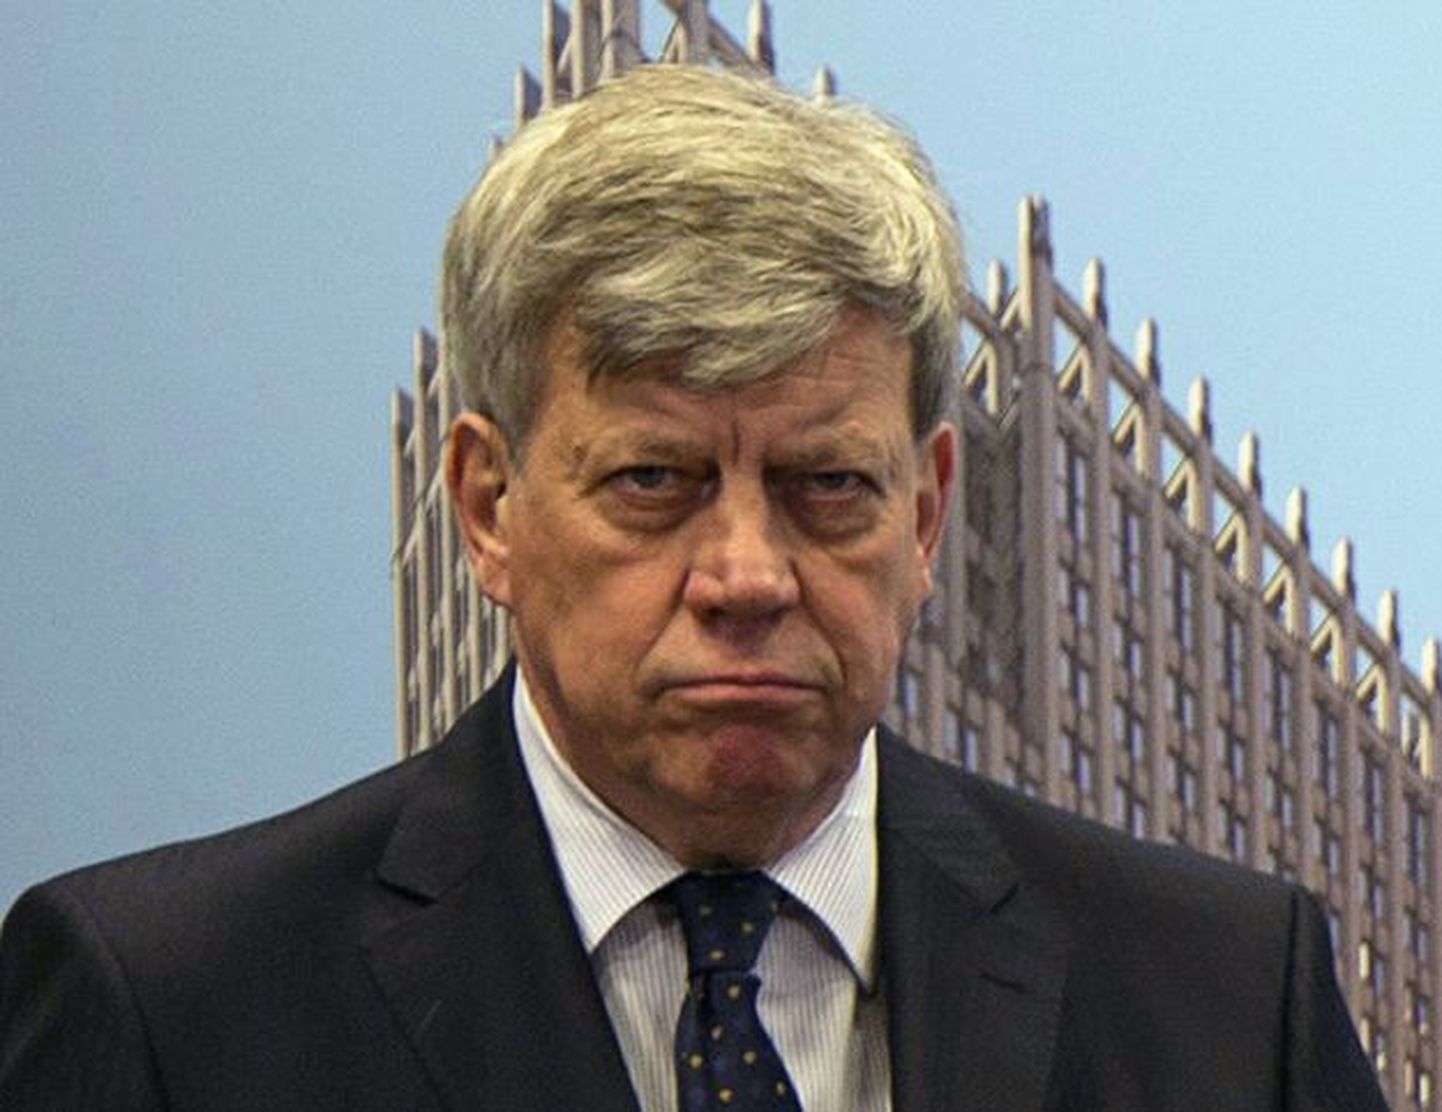 Hollandi justiitsminister Ivo Opstelten astus tagasi